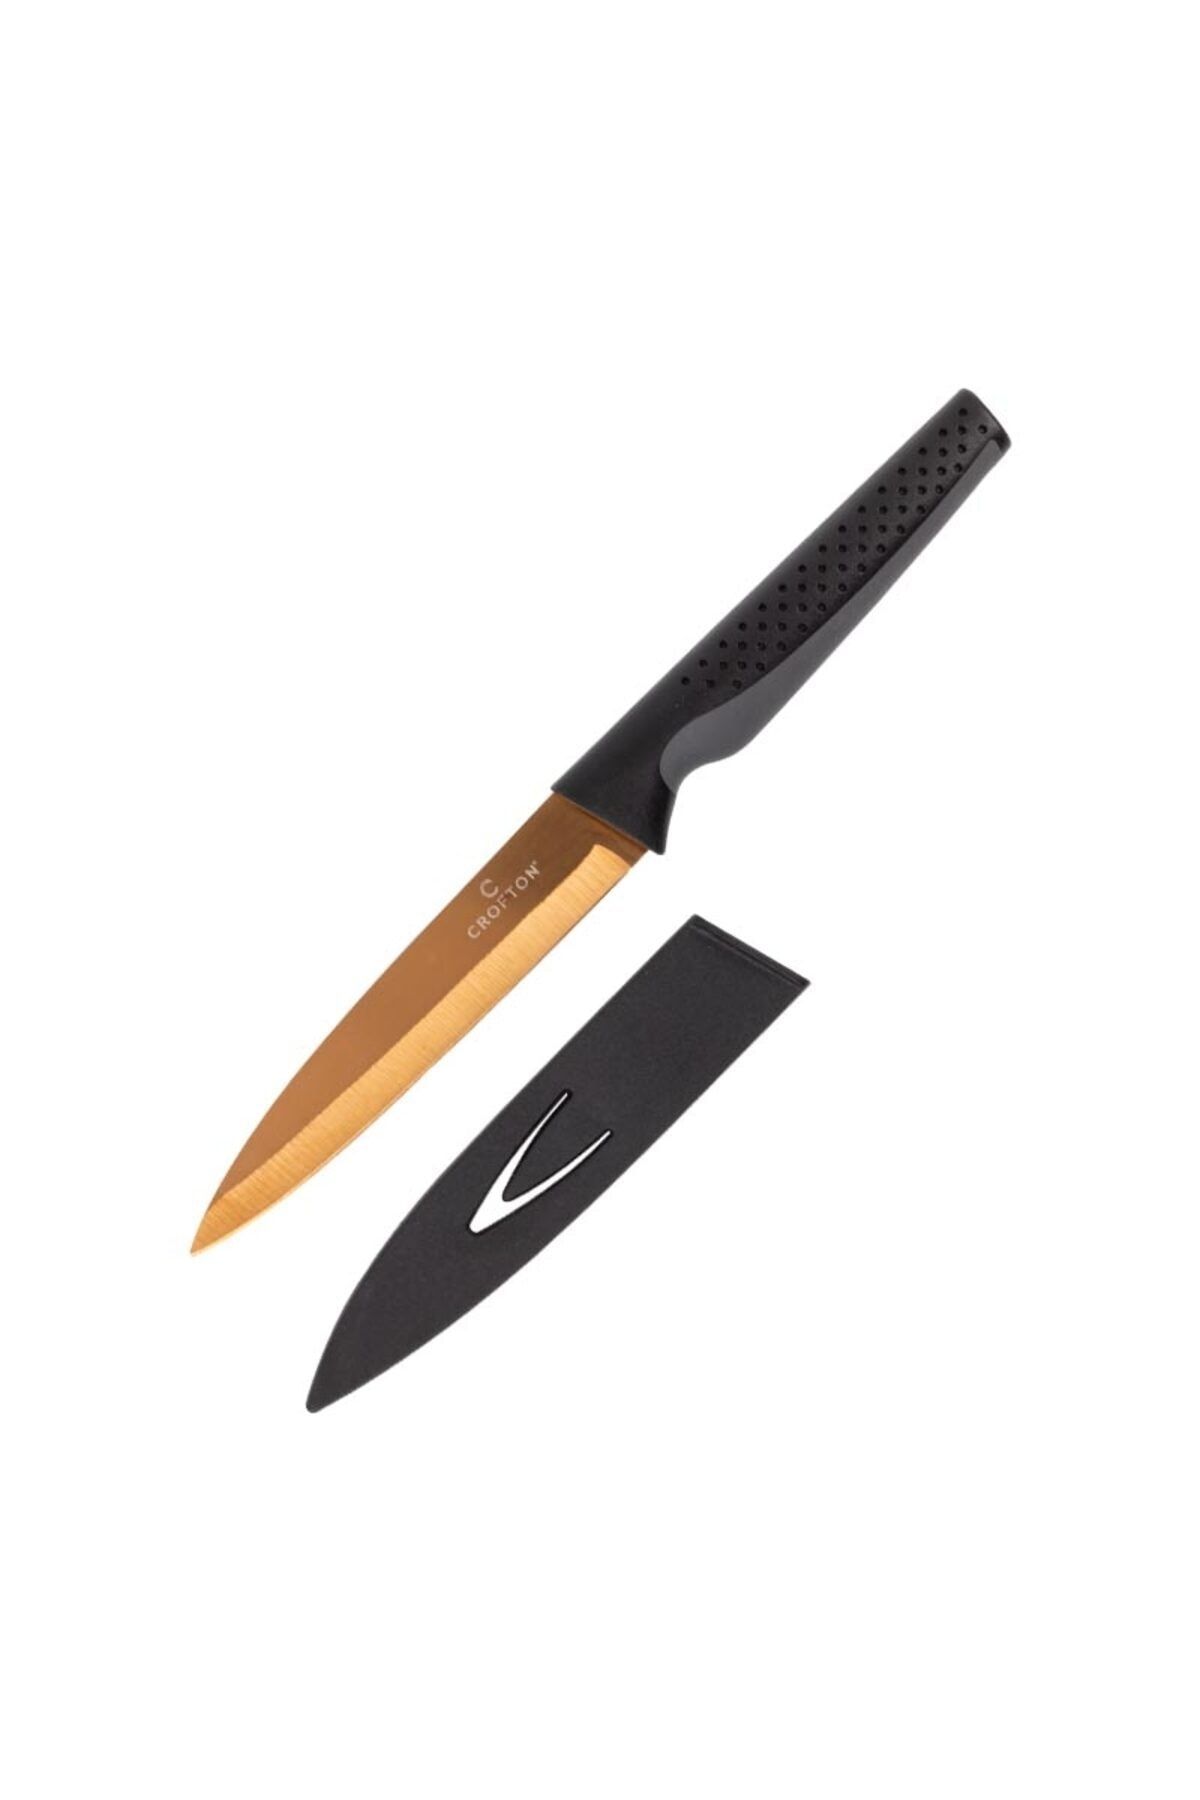 Axe Tools Titanyum Metalinde Plastik Koruma Kılıflı Bronz Renk Mutfak Bıçağı Avcı Kampçı Dağcı Bıçağı